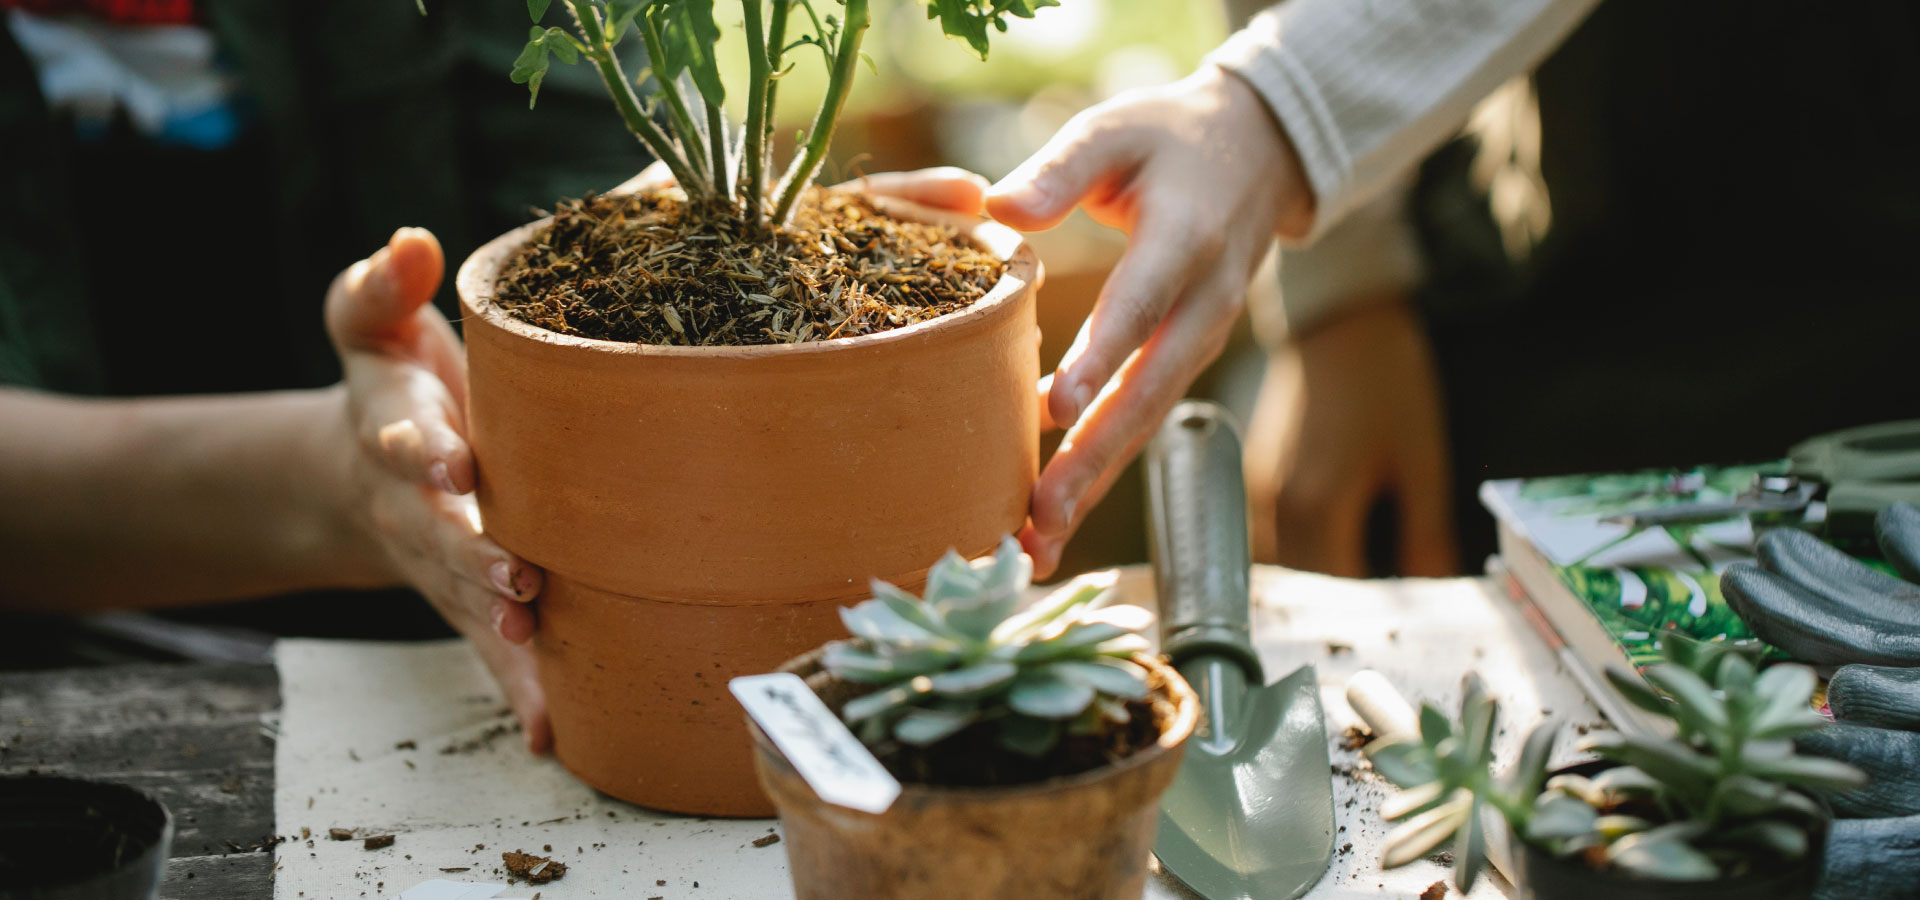 Ceramiczna doniczka z zasadzoną rośliną, wokół kwiaty i inne sadzonki oraz akcesoria do sadzenia.